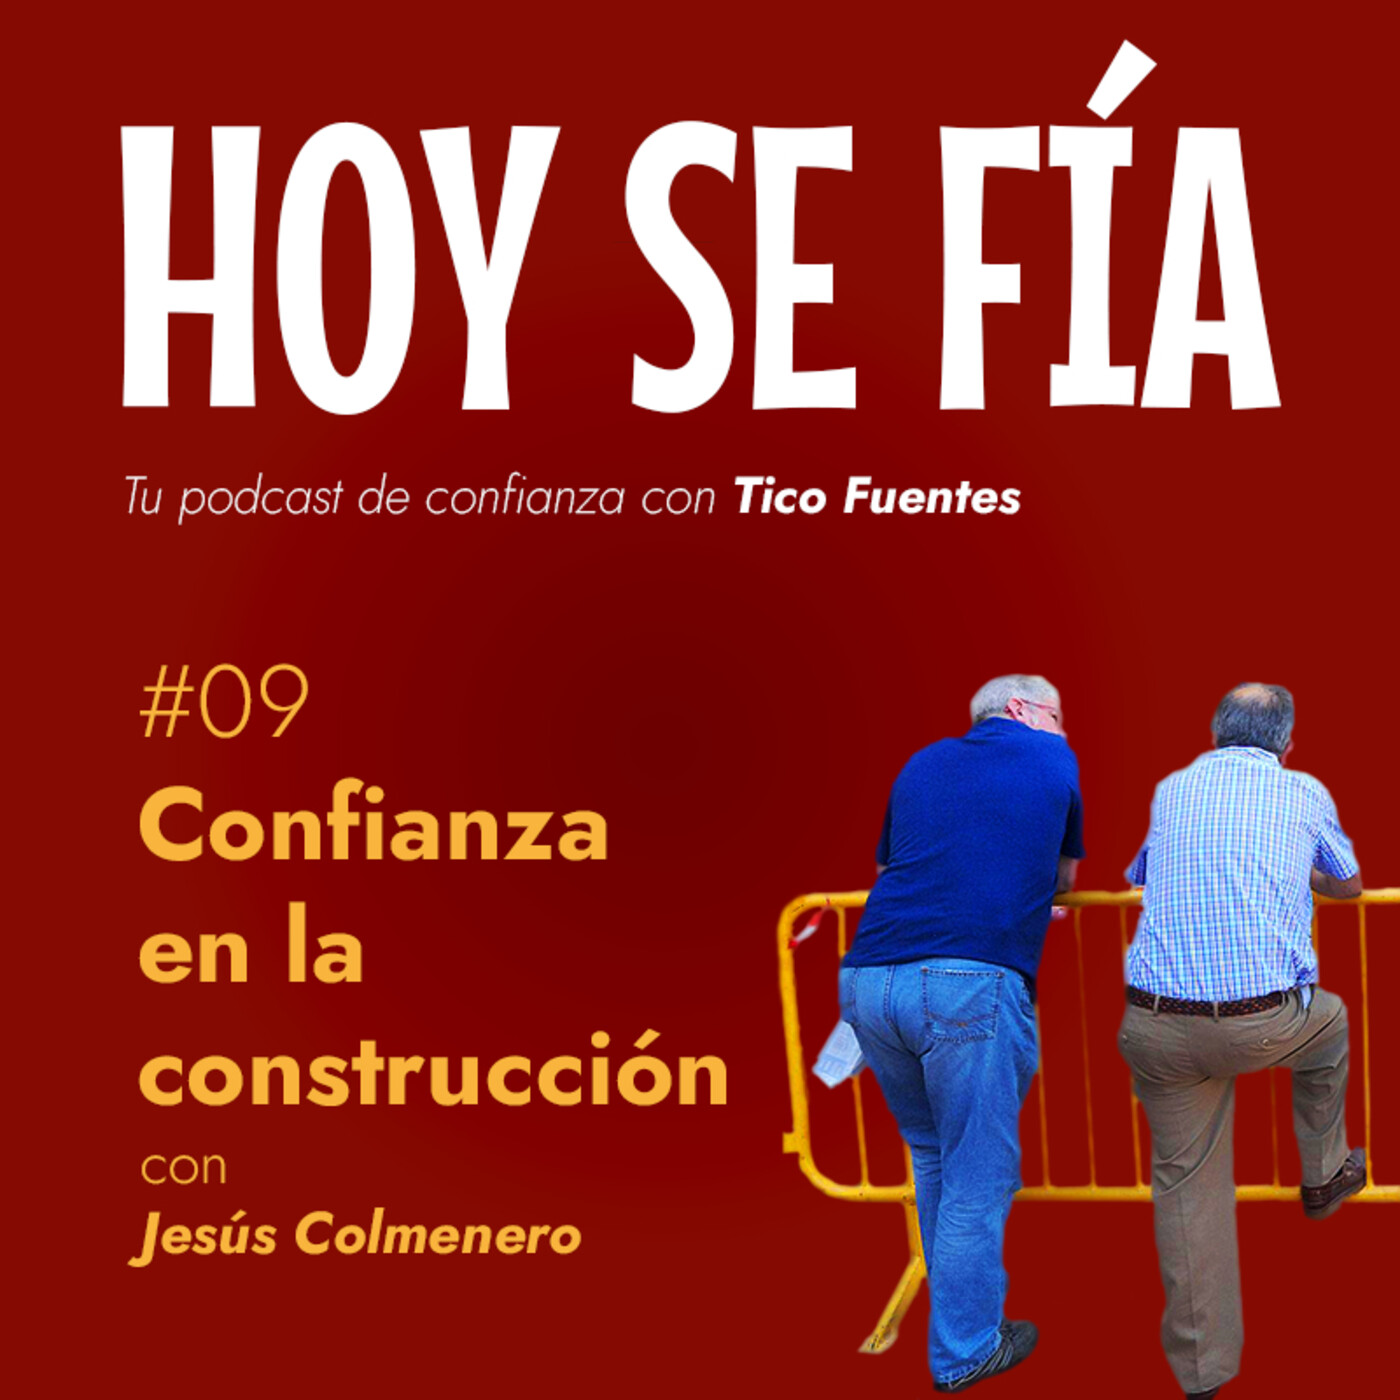 #09 Confianza en la construcción con Jesús Colmenero